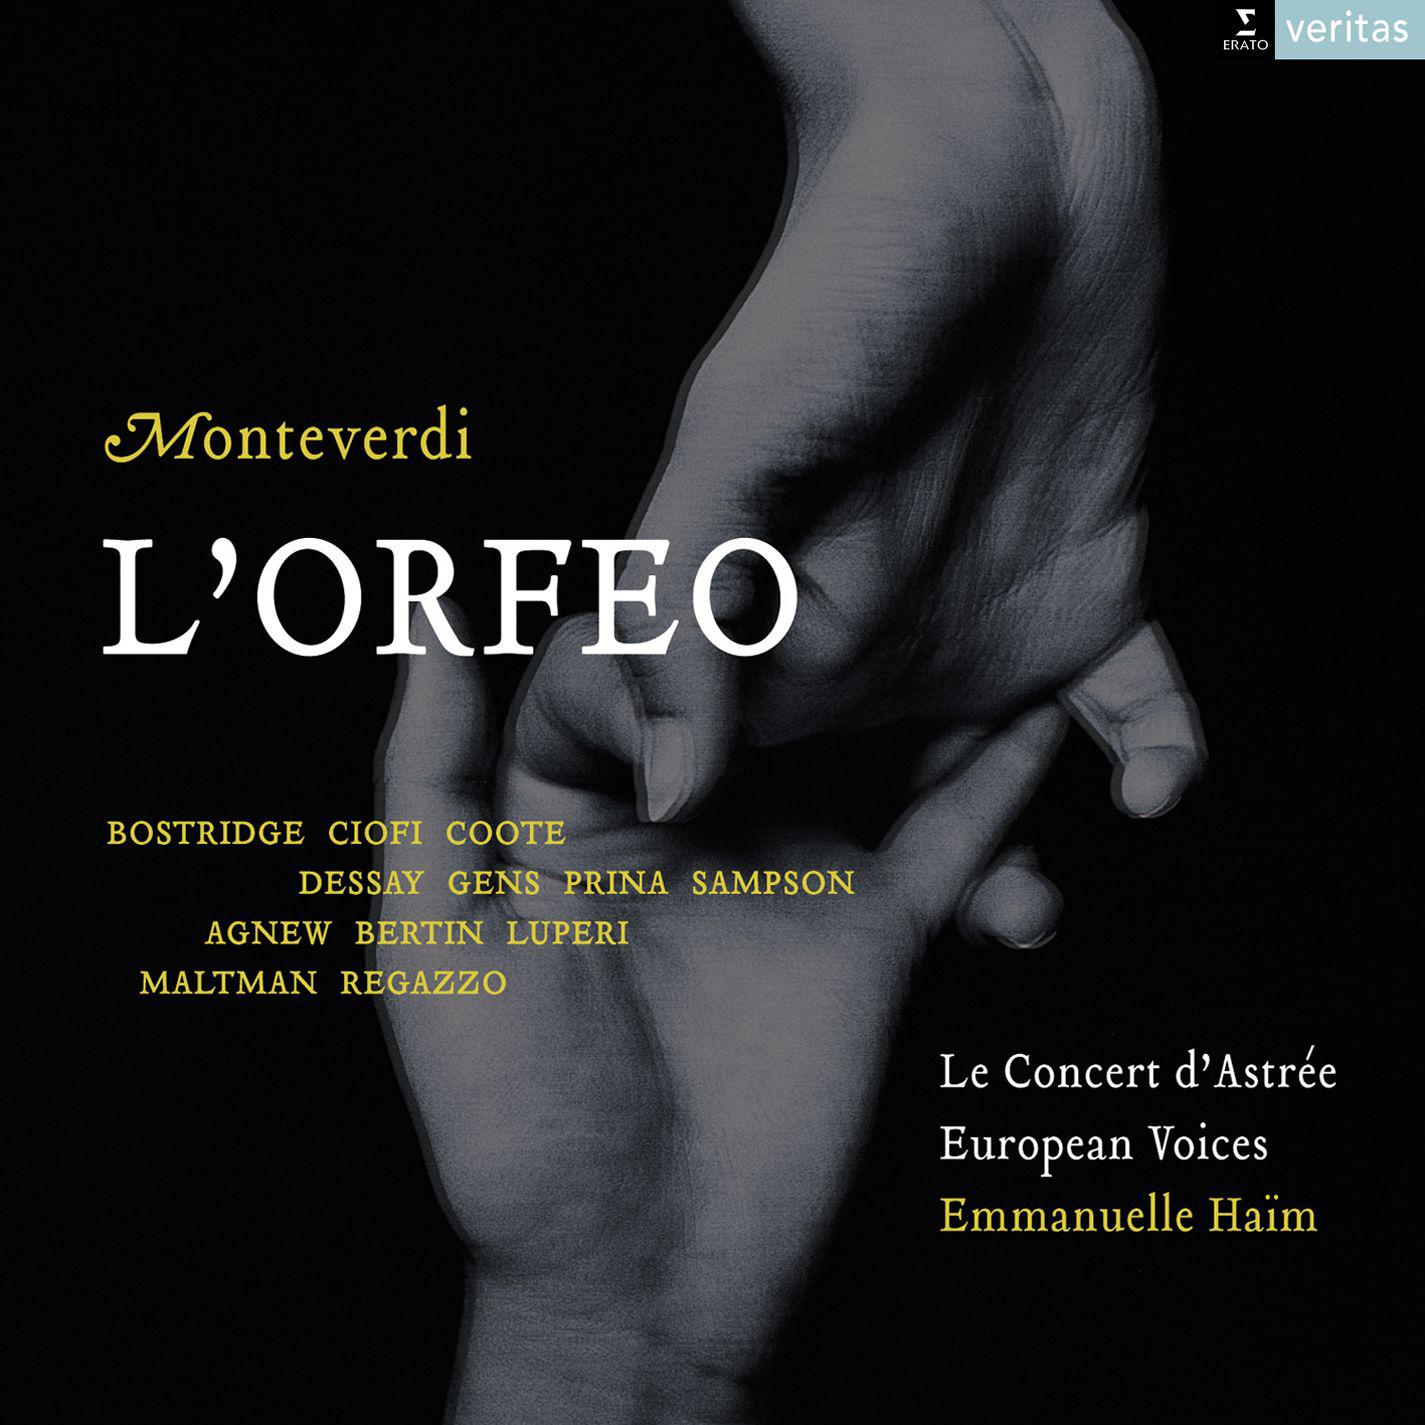 L'Orfeo, favola in musica, SV 318, Act 5: Ritornello - Coro, "Vanne, Orfeo, felice e pieno"